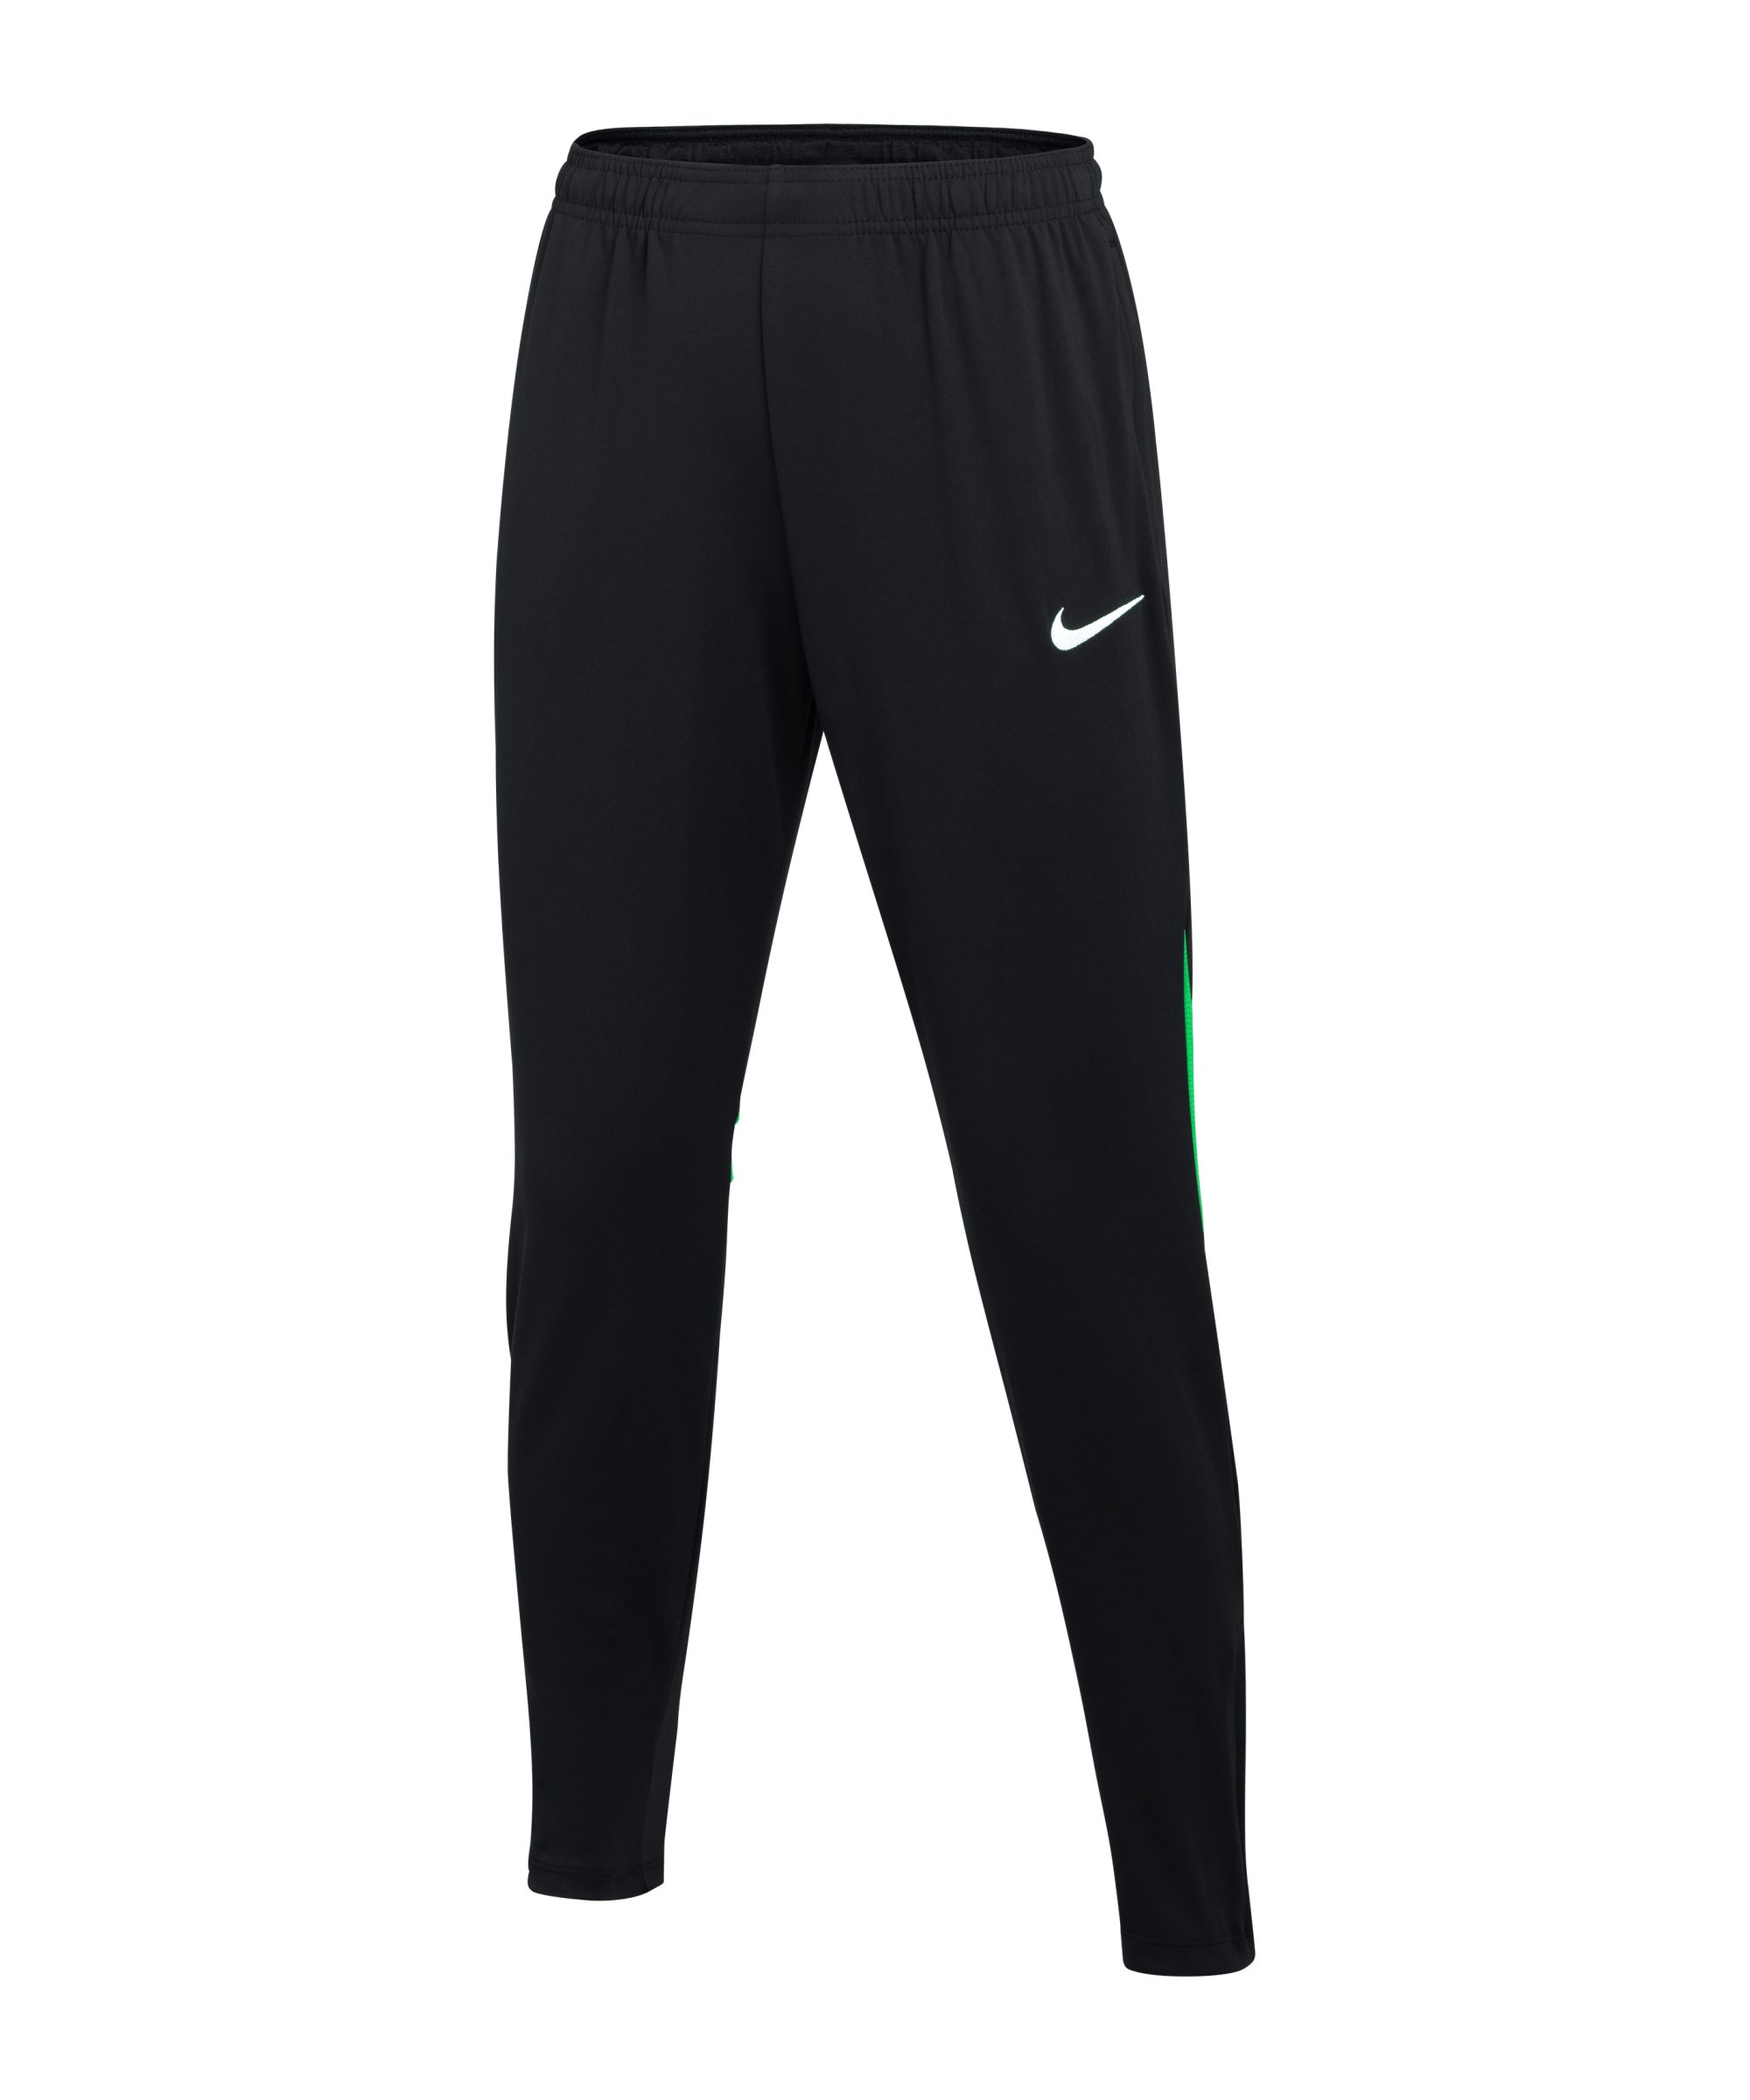 Nike Academy Pro Trainingshose Damen Schwarz F011 - schwarz